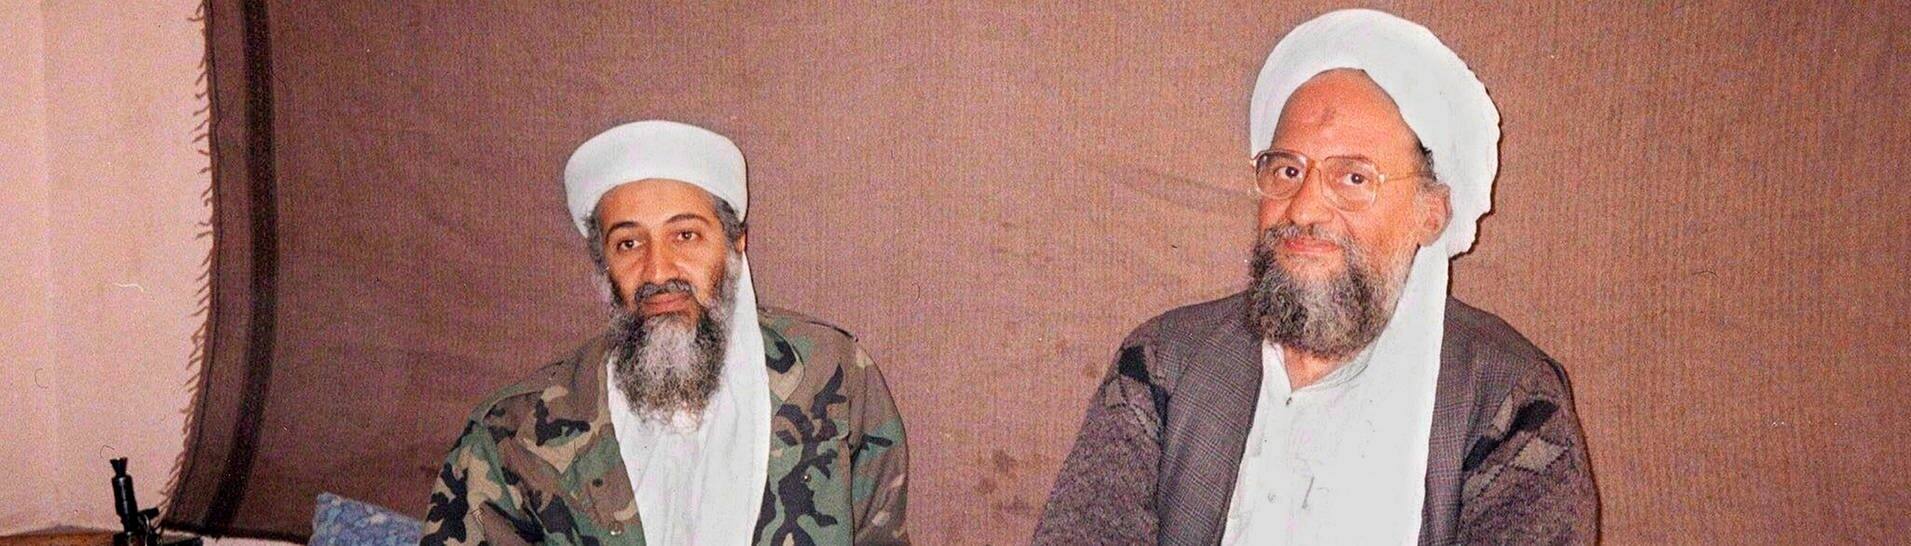 Ein Foto der Zeitung Ausaf vom 08.11.2001 zeigt Osama bin Laden (l) zusammen mit seinem Stellvertreter Aiman al-Sawahiri in einem Versteck an einem ungenannten Ort in Afghanistan. (Foto: dpa Bildfunk, picture alliance/dpa/EPA | Ausaf Newspaper)